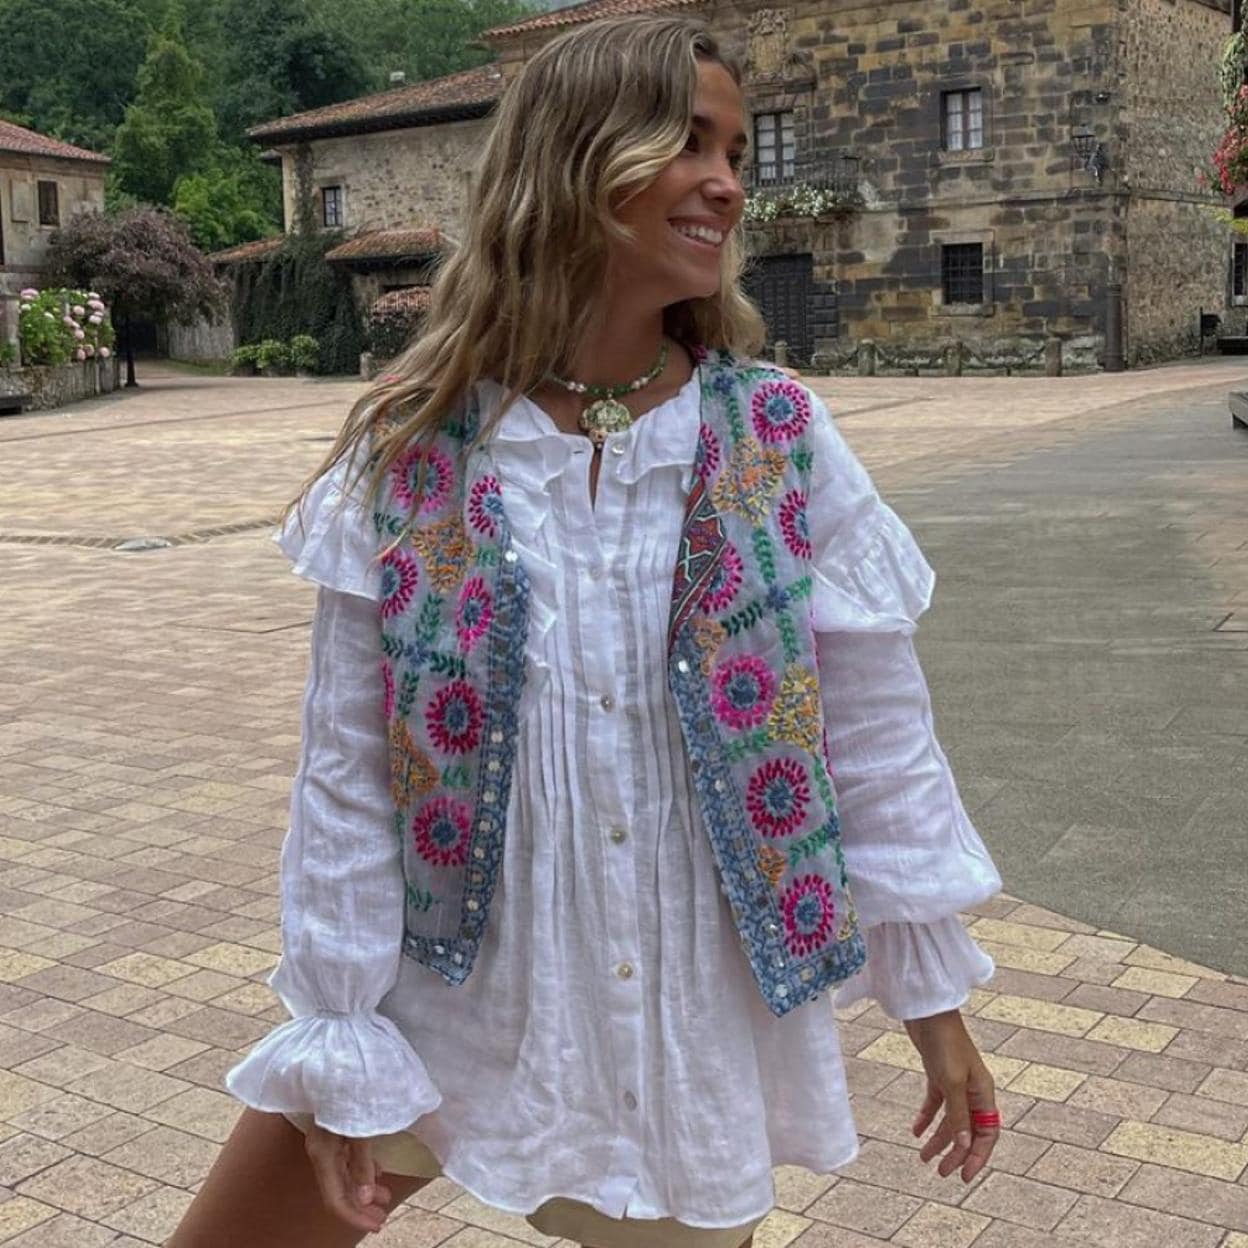 Agotada y sin lista de espera: dónde cómo encontrar la blusa blanca romántica de las rebajas de Zara que arrasa en Instagram | Mujer Hoy